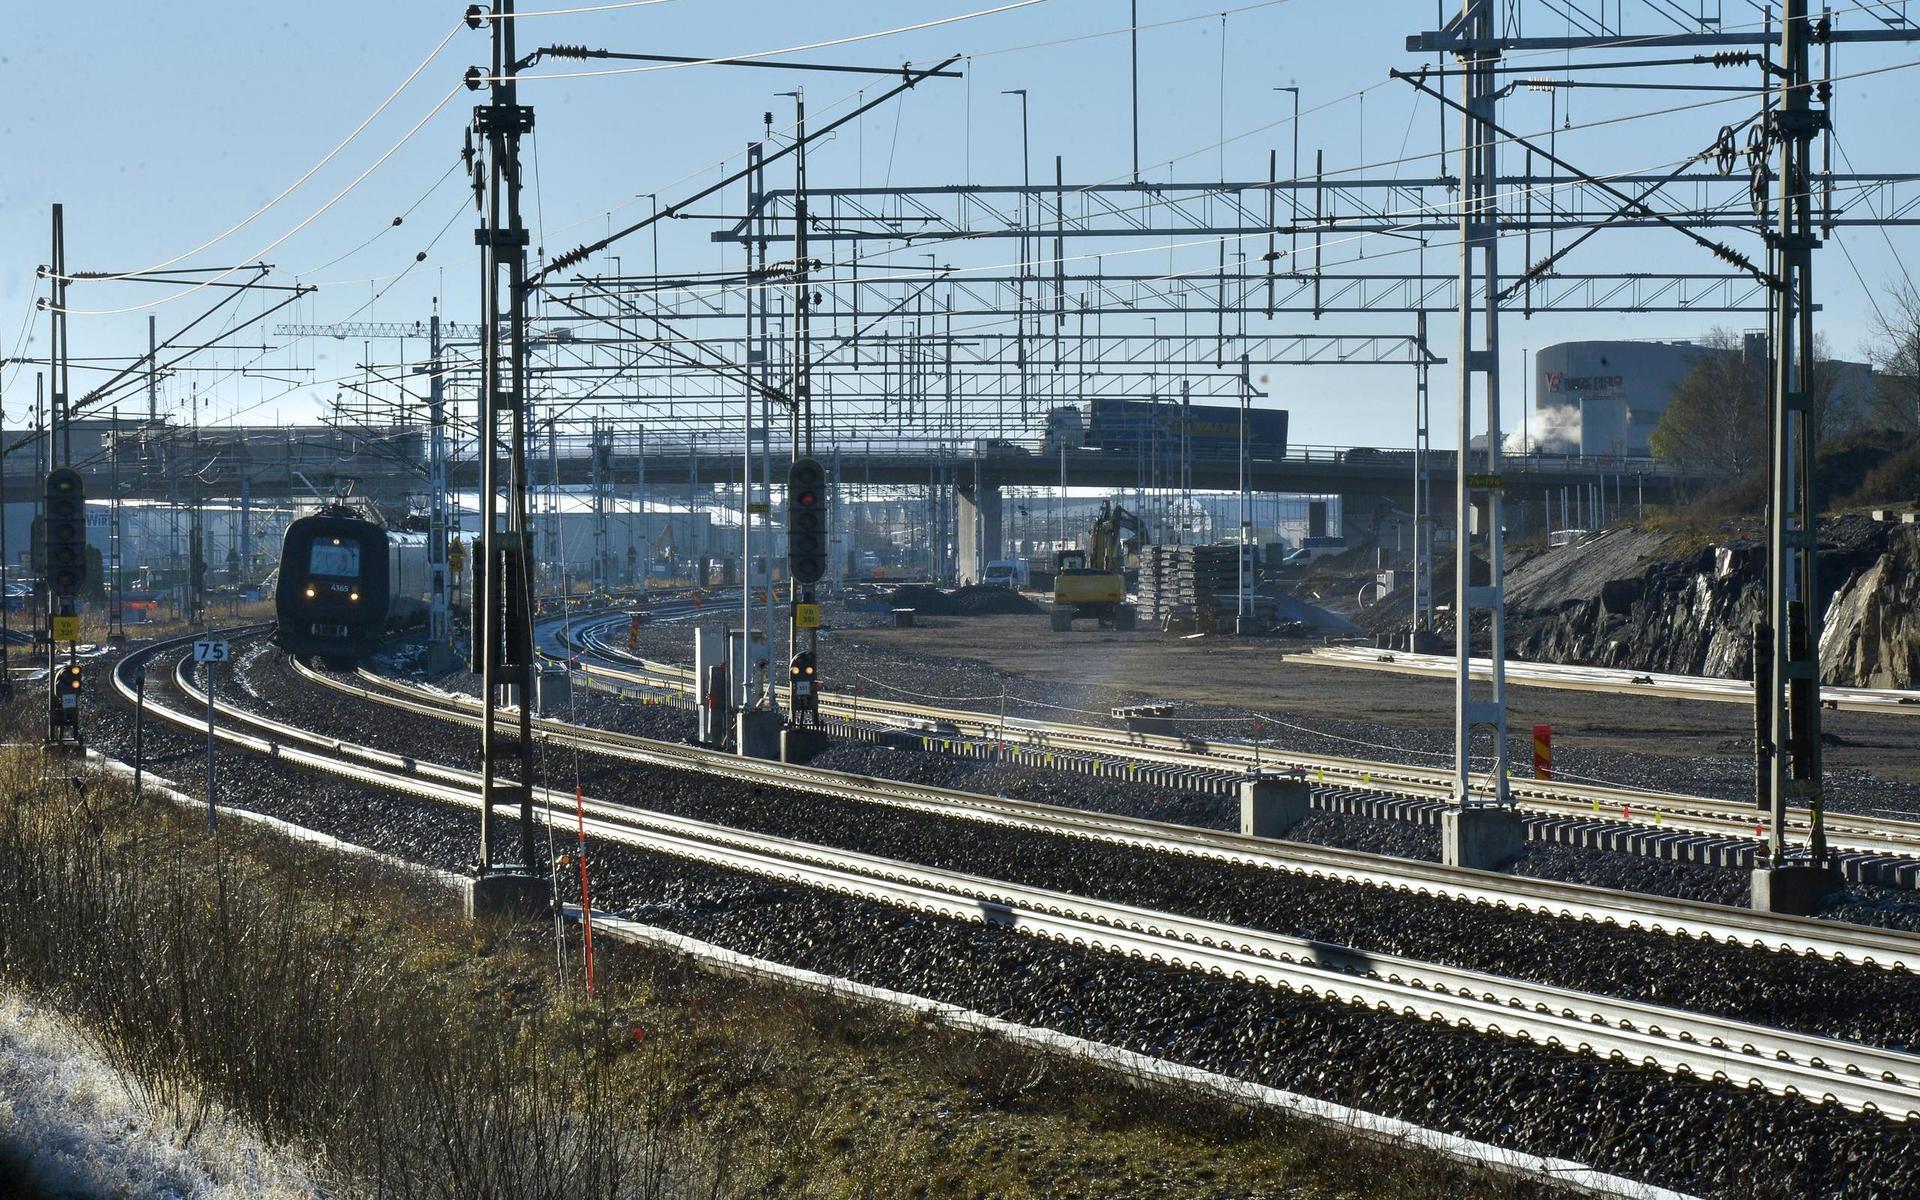 När Varbergstunneln och Västlänken är klara – 2027 – sjösätts det nya regionaltåget mellan Varberg och Göteborg. Arbetsnamnet är ”Hallandståget”.